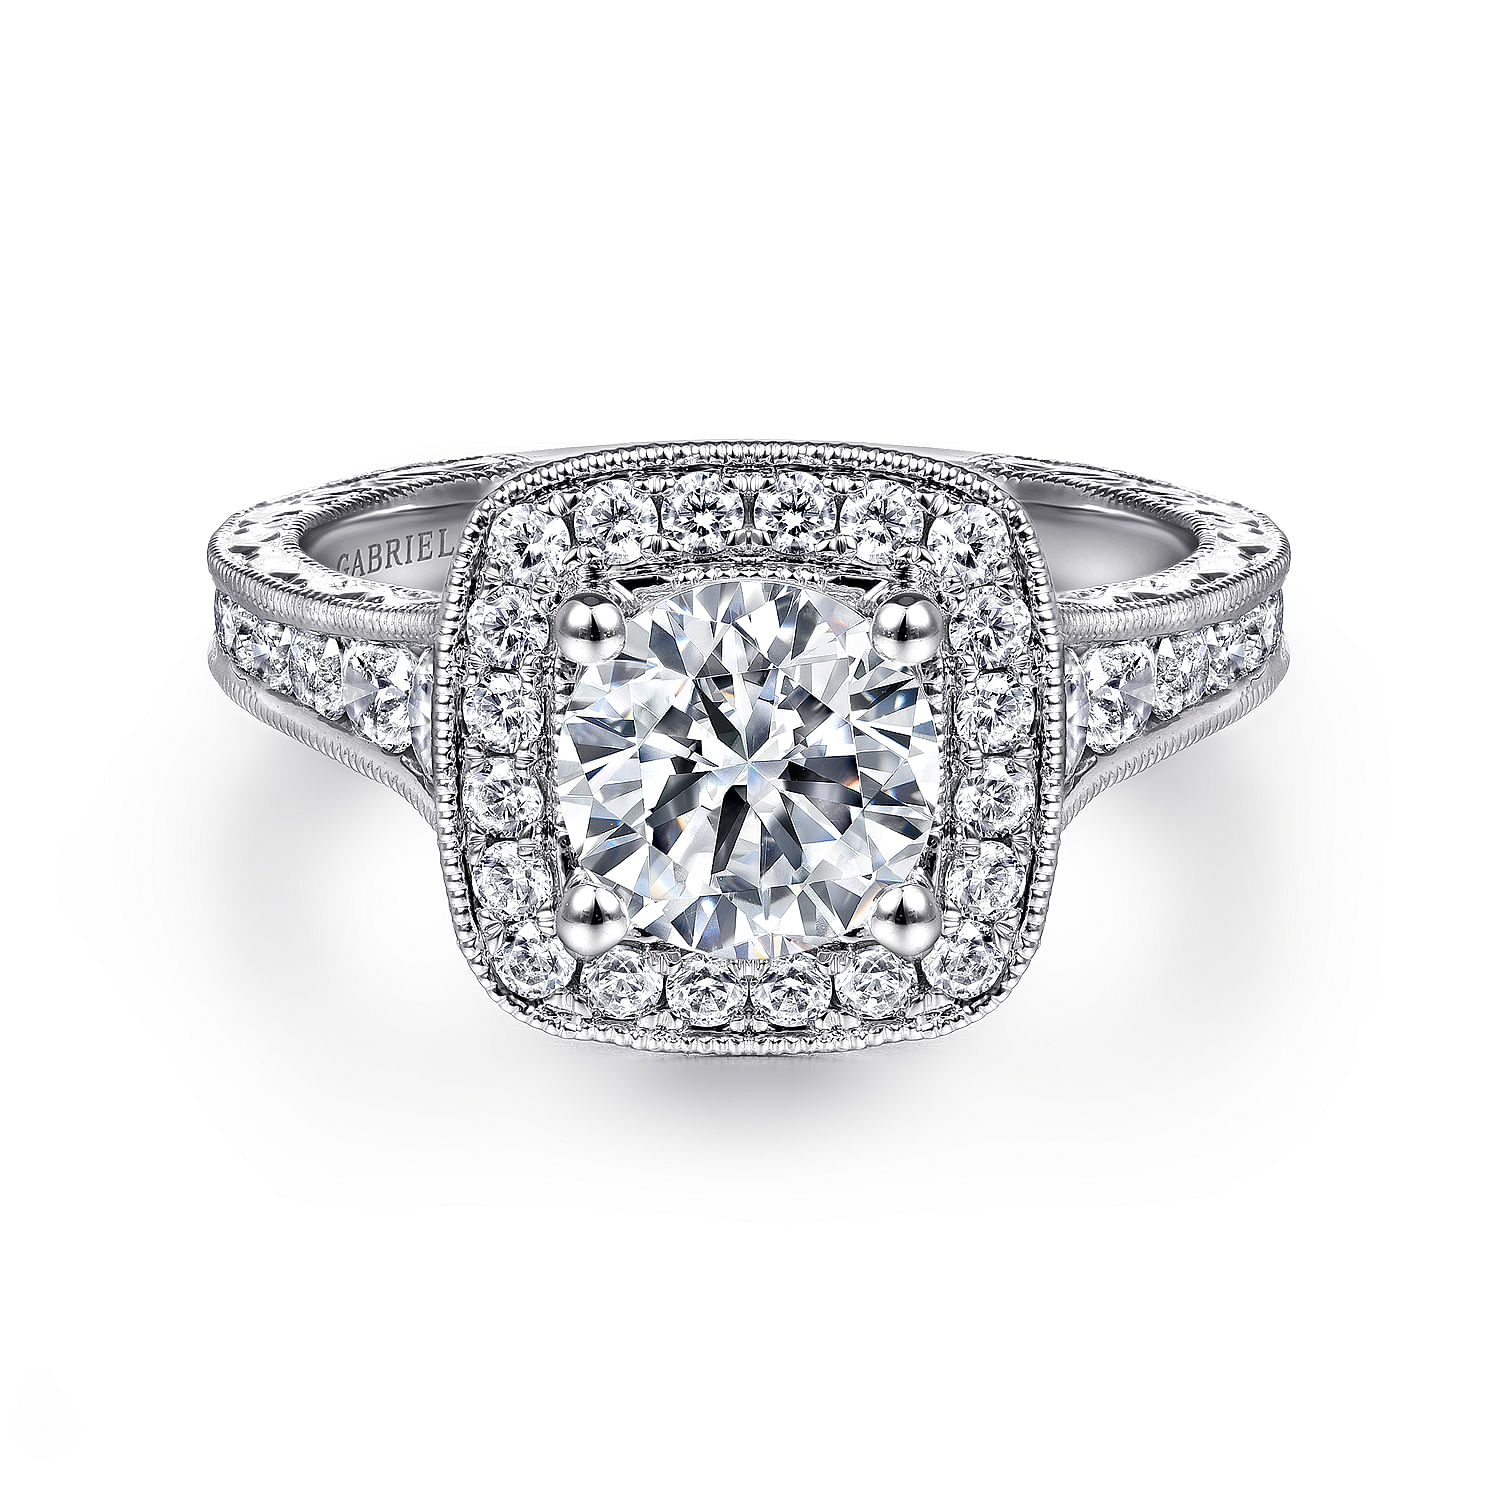 Elaine - Vintage Inspired 14K White Gold Cushion Halo Round Diamond Engagement Ring